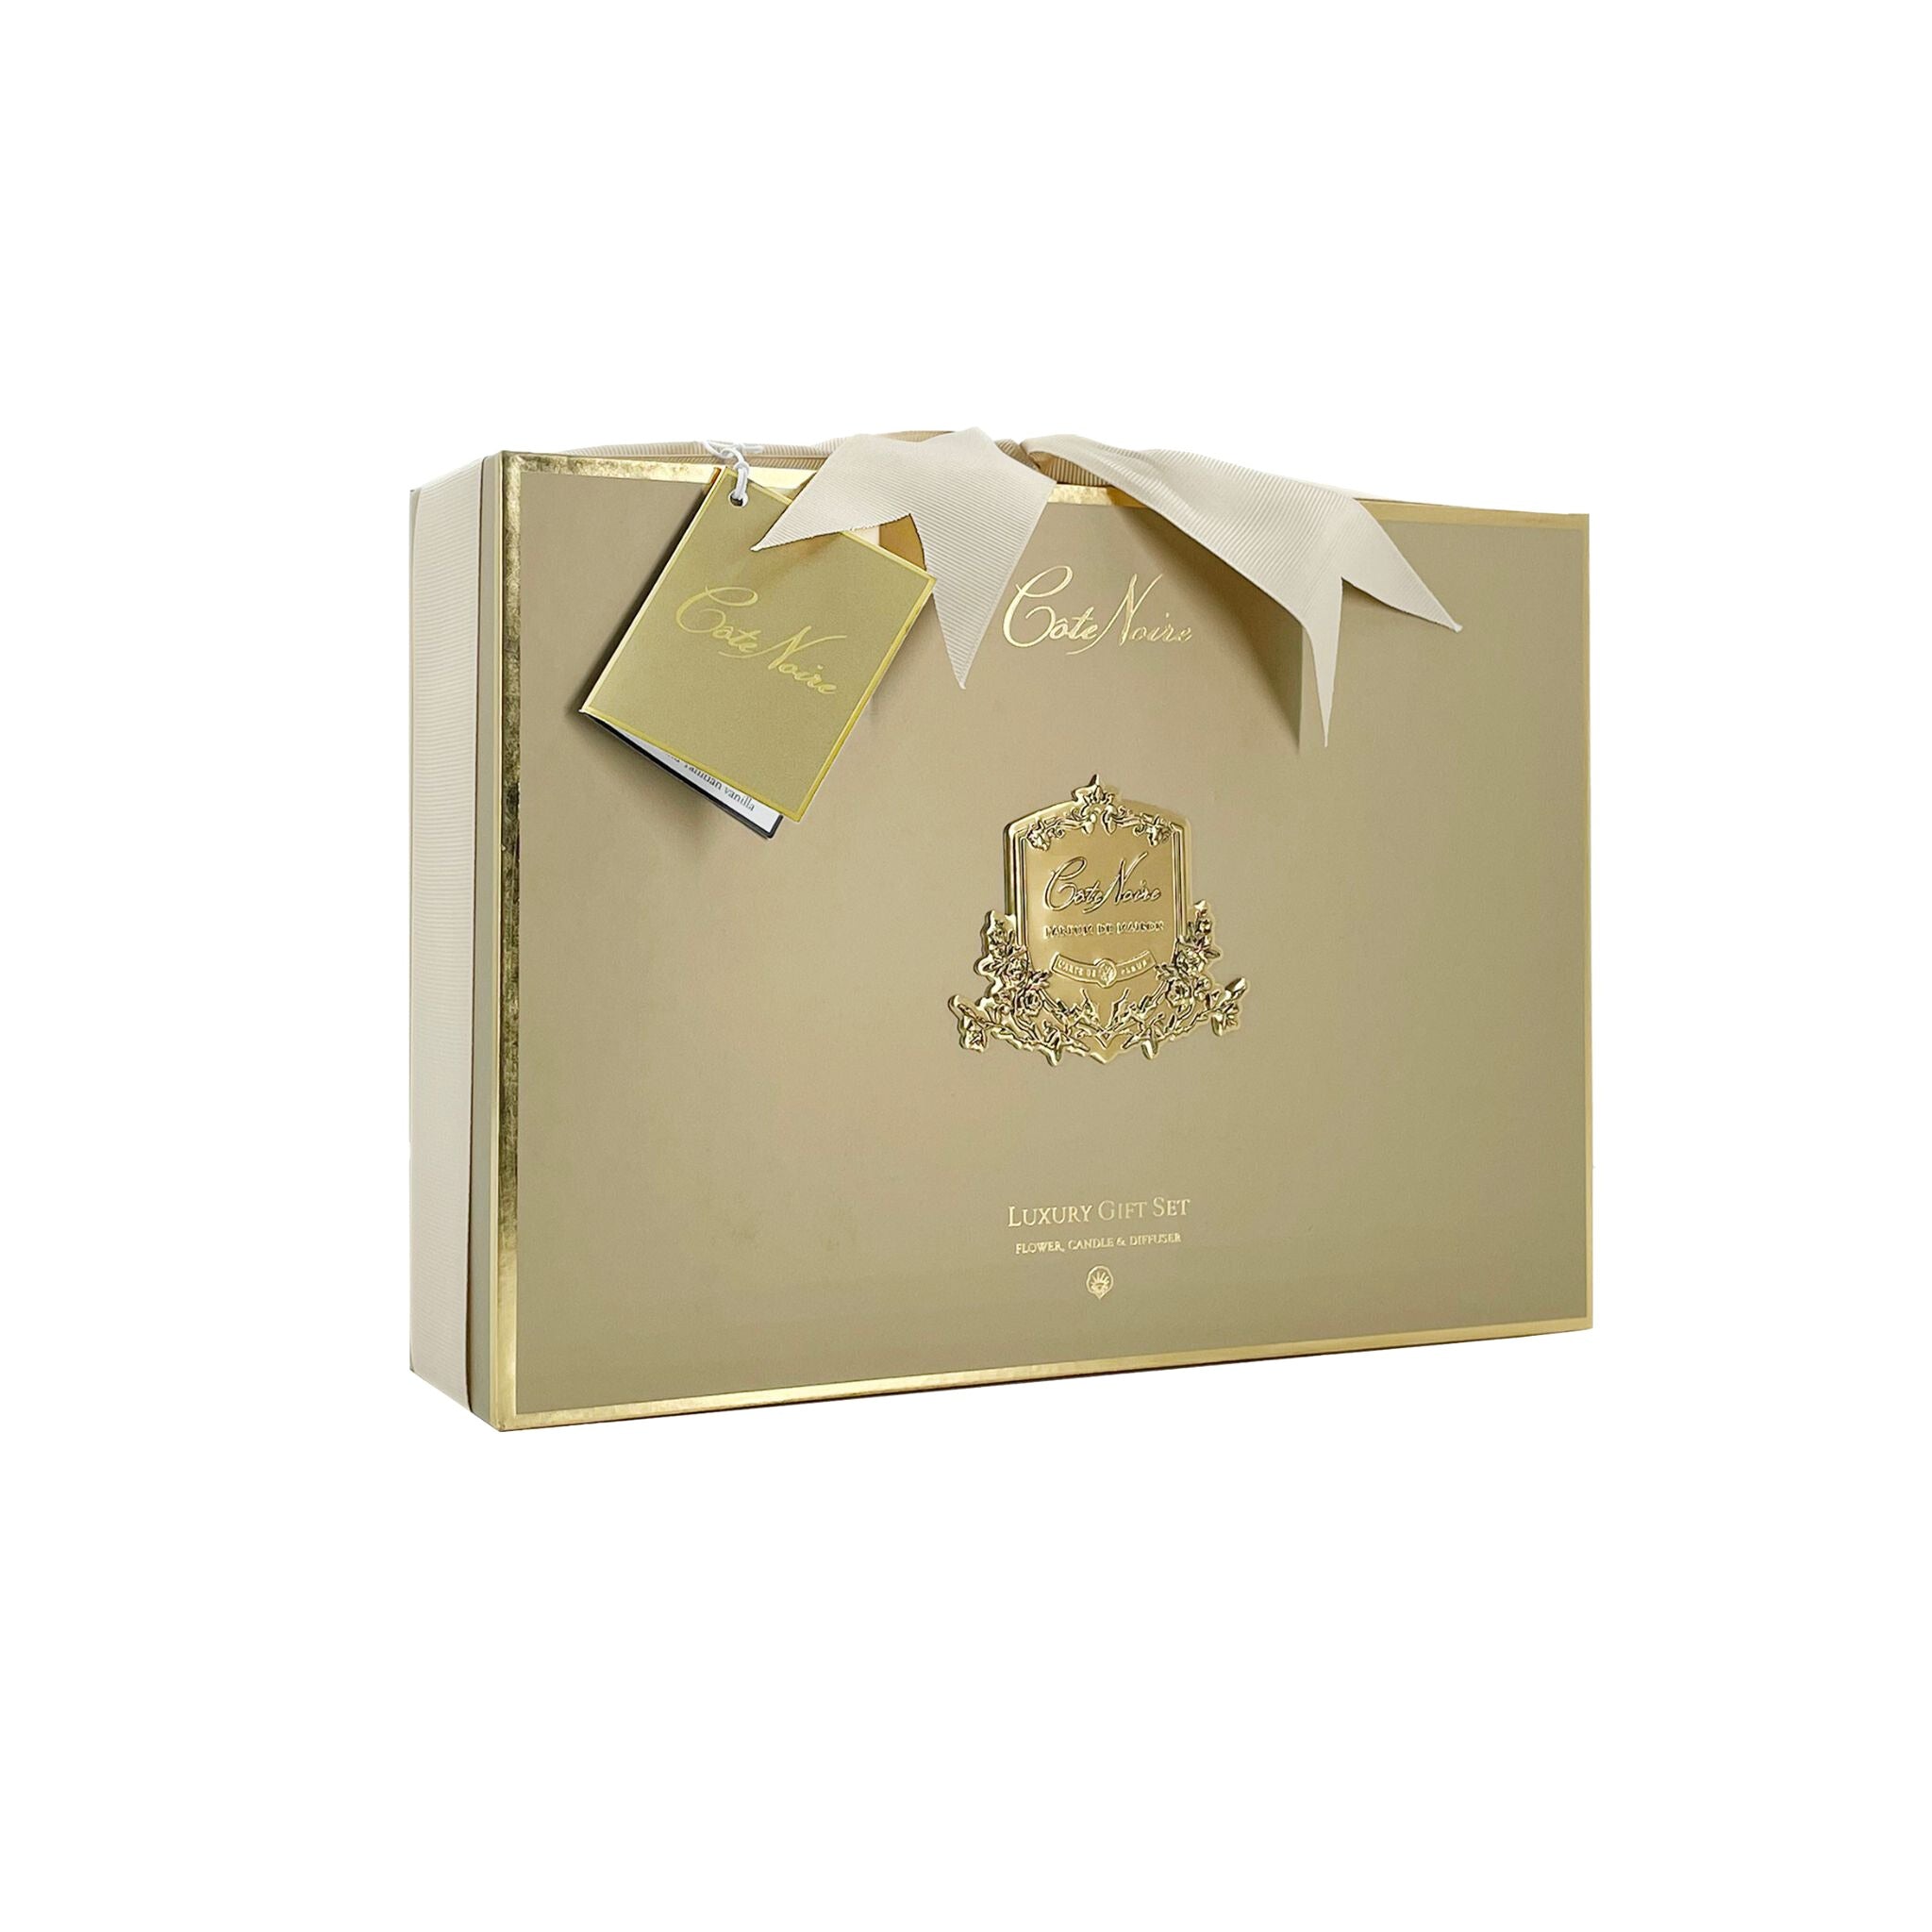 Blonde Vanilla Luxury Fragrance Gift Set | Côte Noire